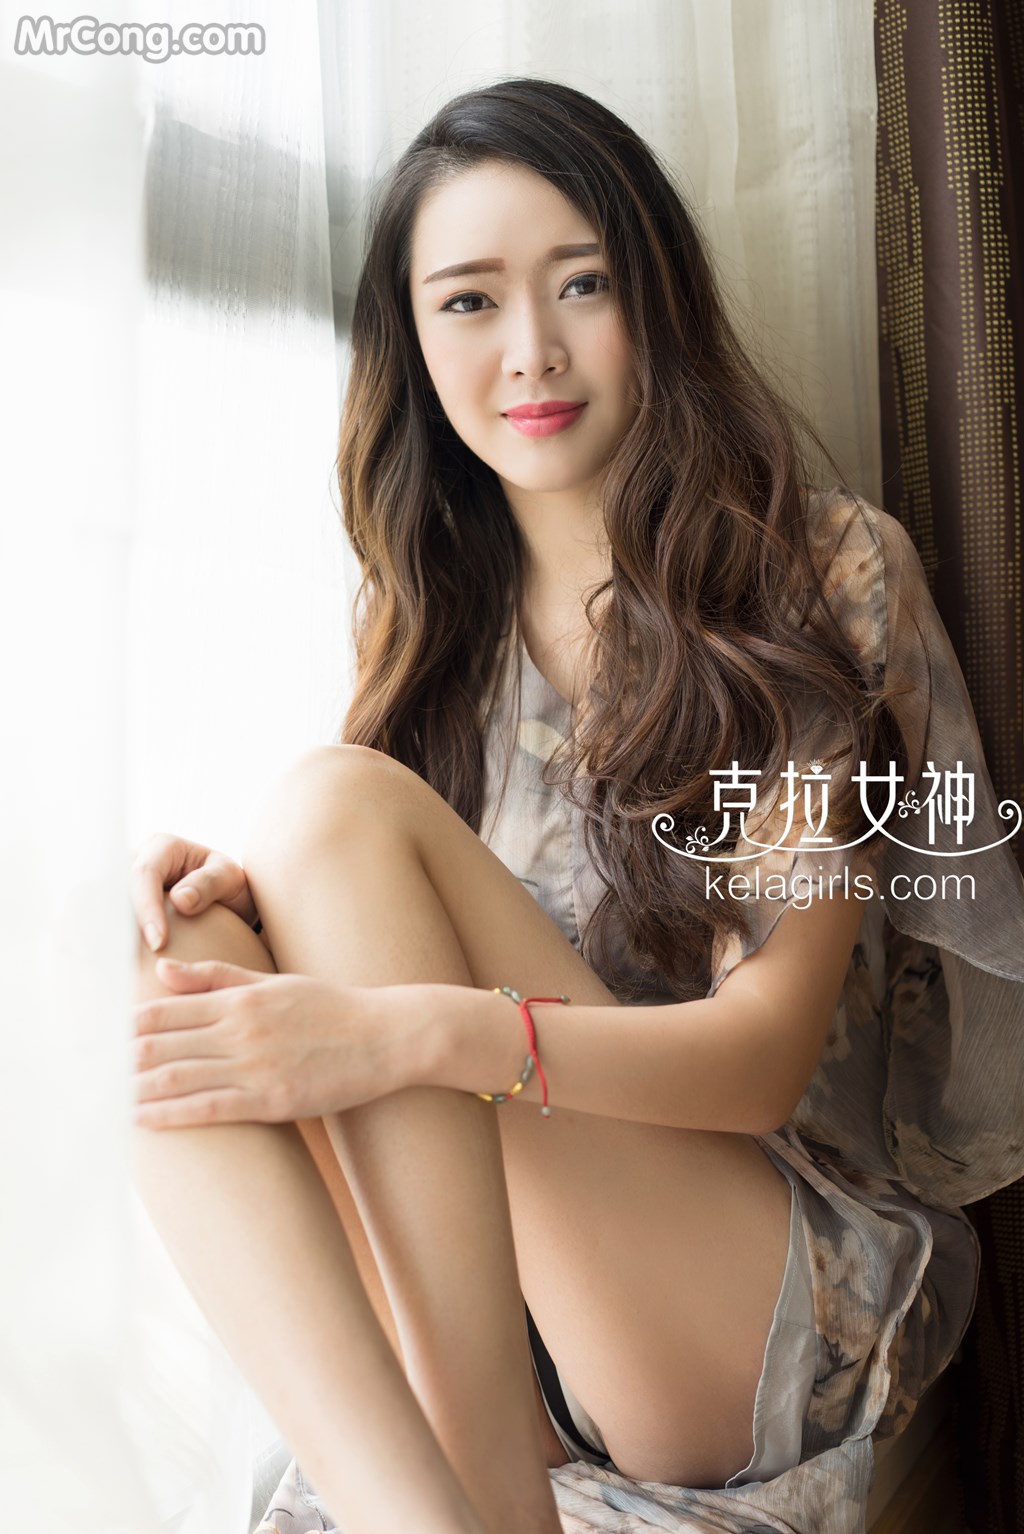 KelaGirls 2017-04-05: Model Shan Shan (珊珊) (31 photos) photo 1-5